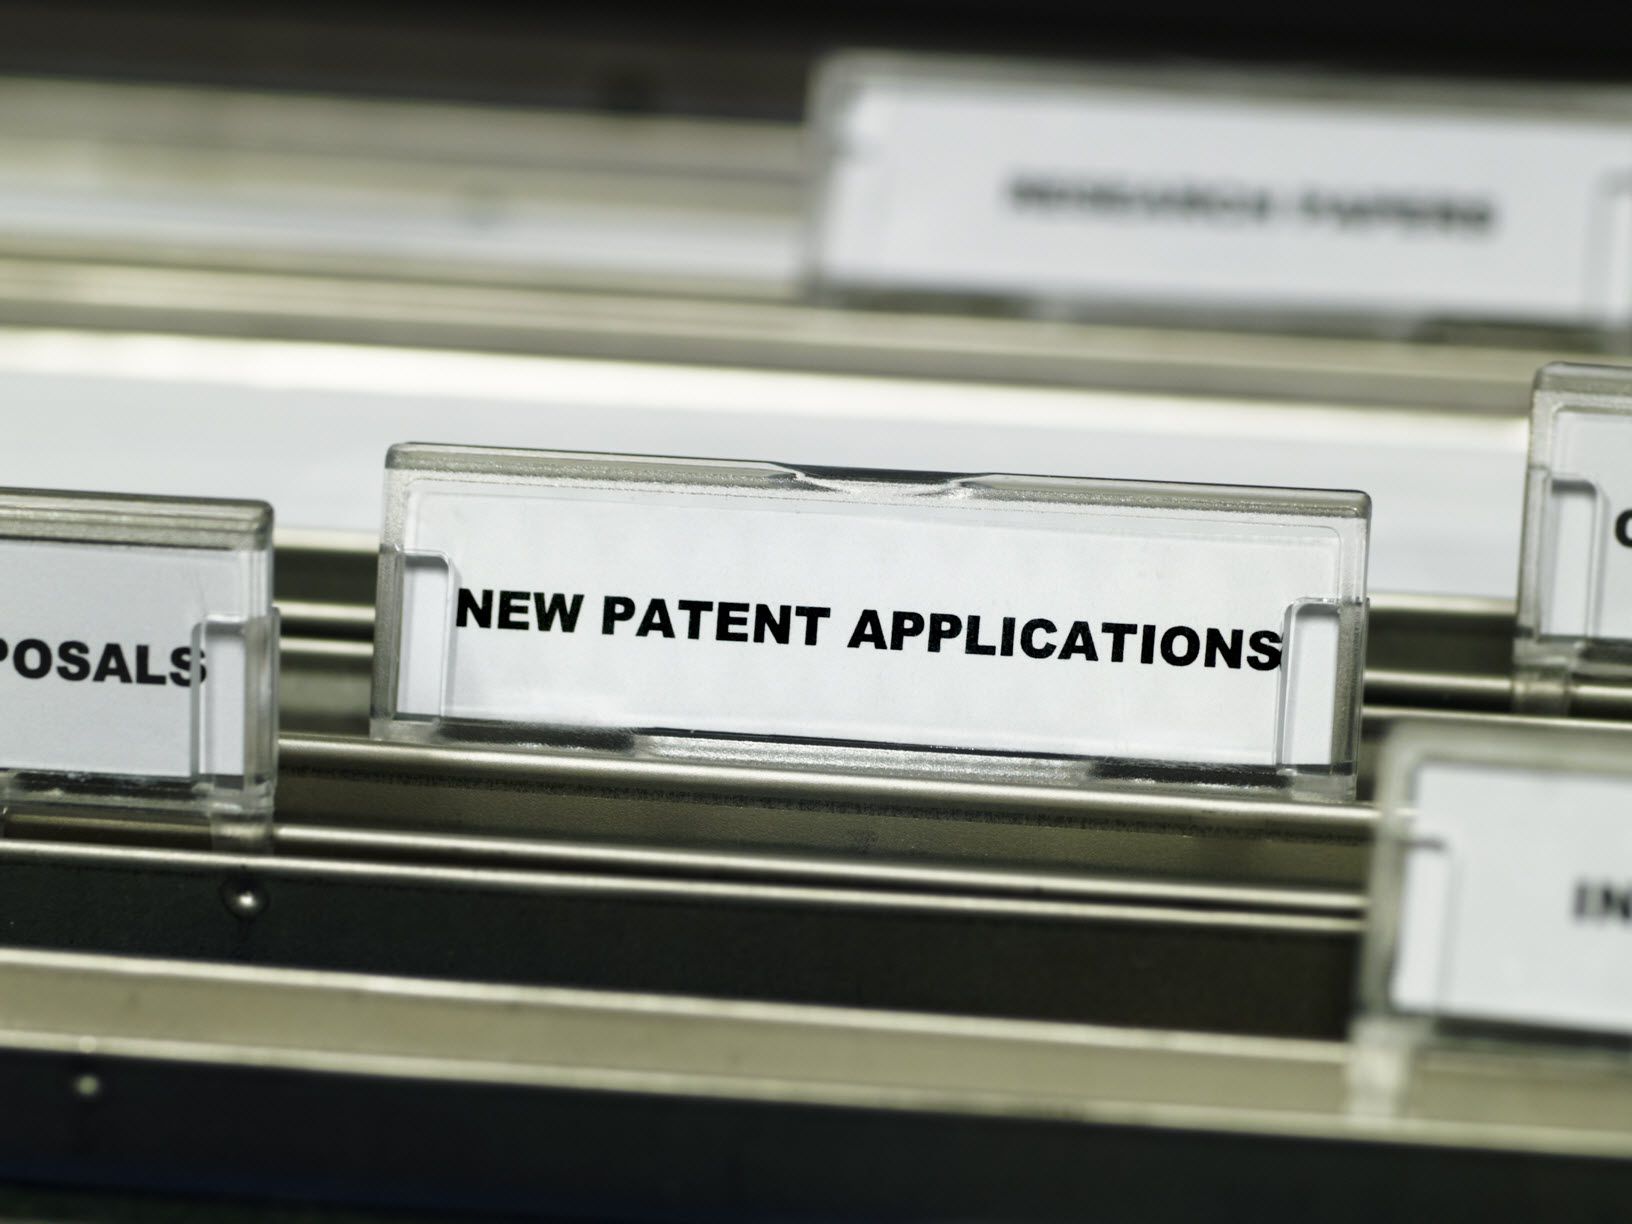 Nová složka souborů patentových přihlášek